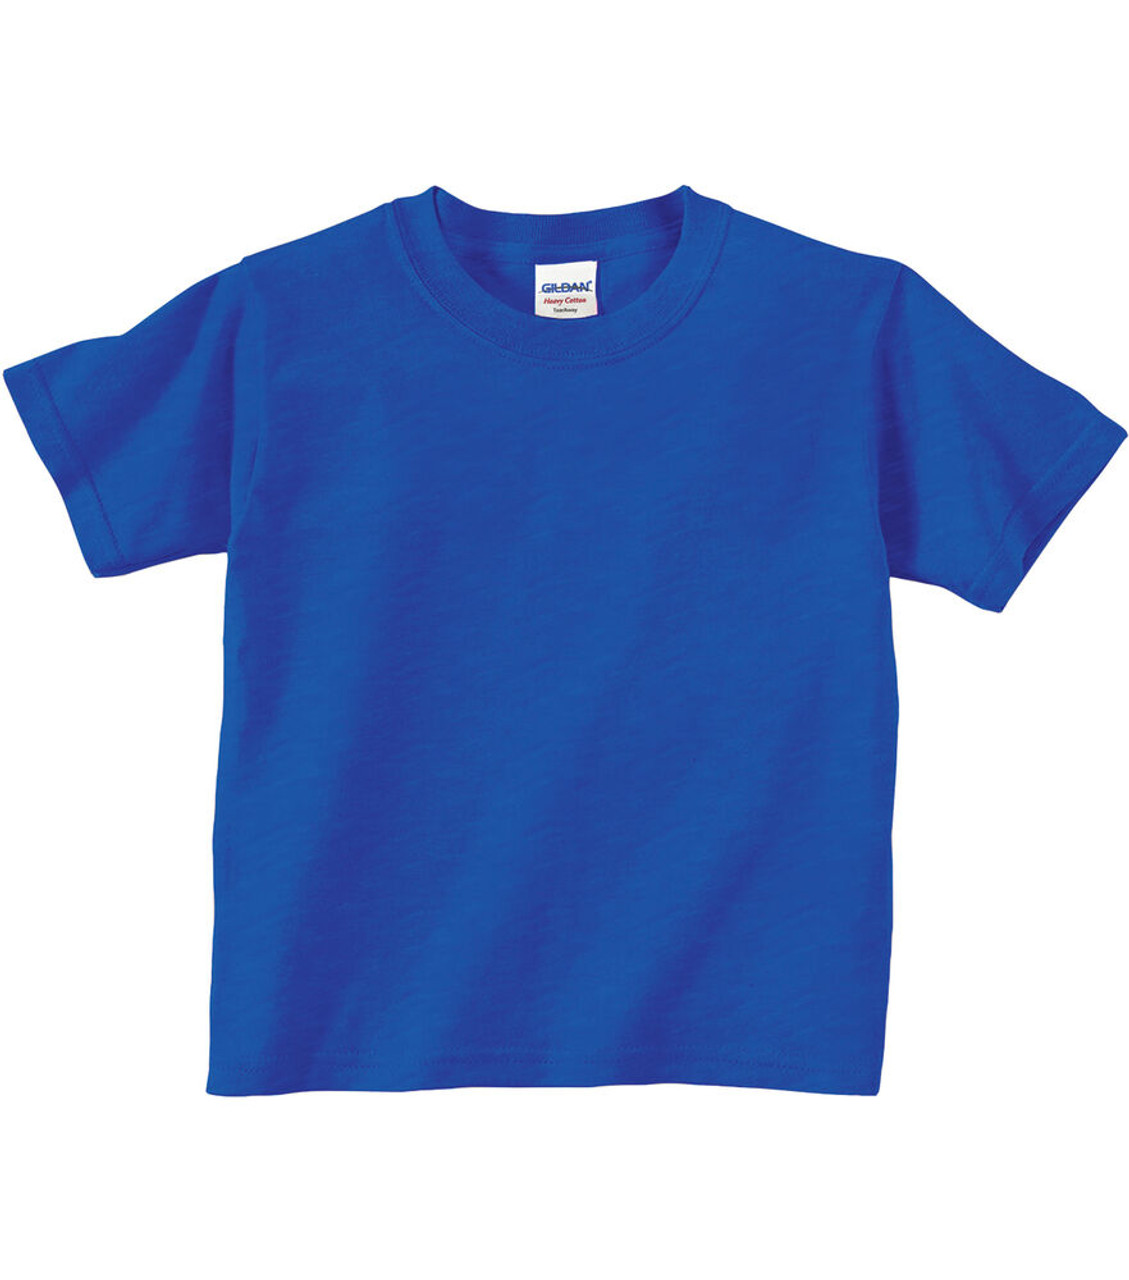 2T - Royal - Gildan - Custom T-shirt